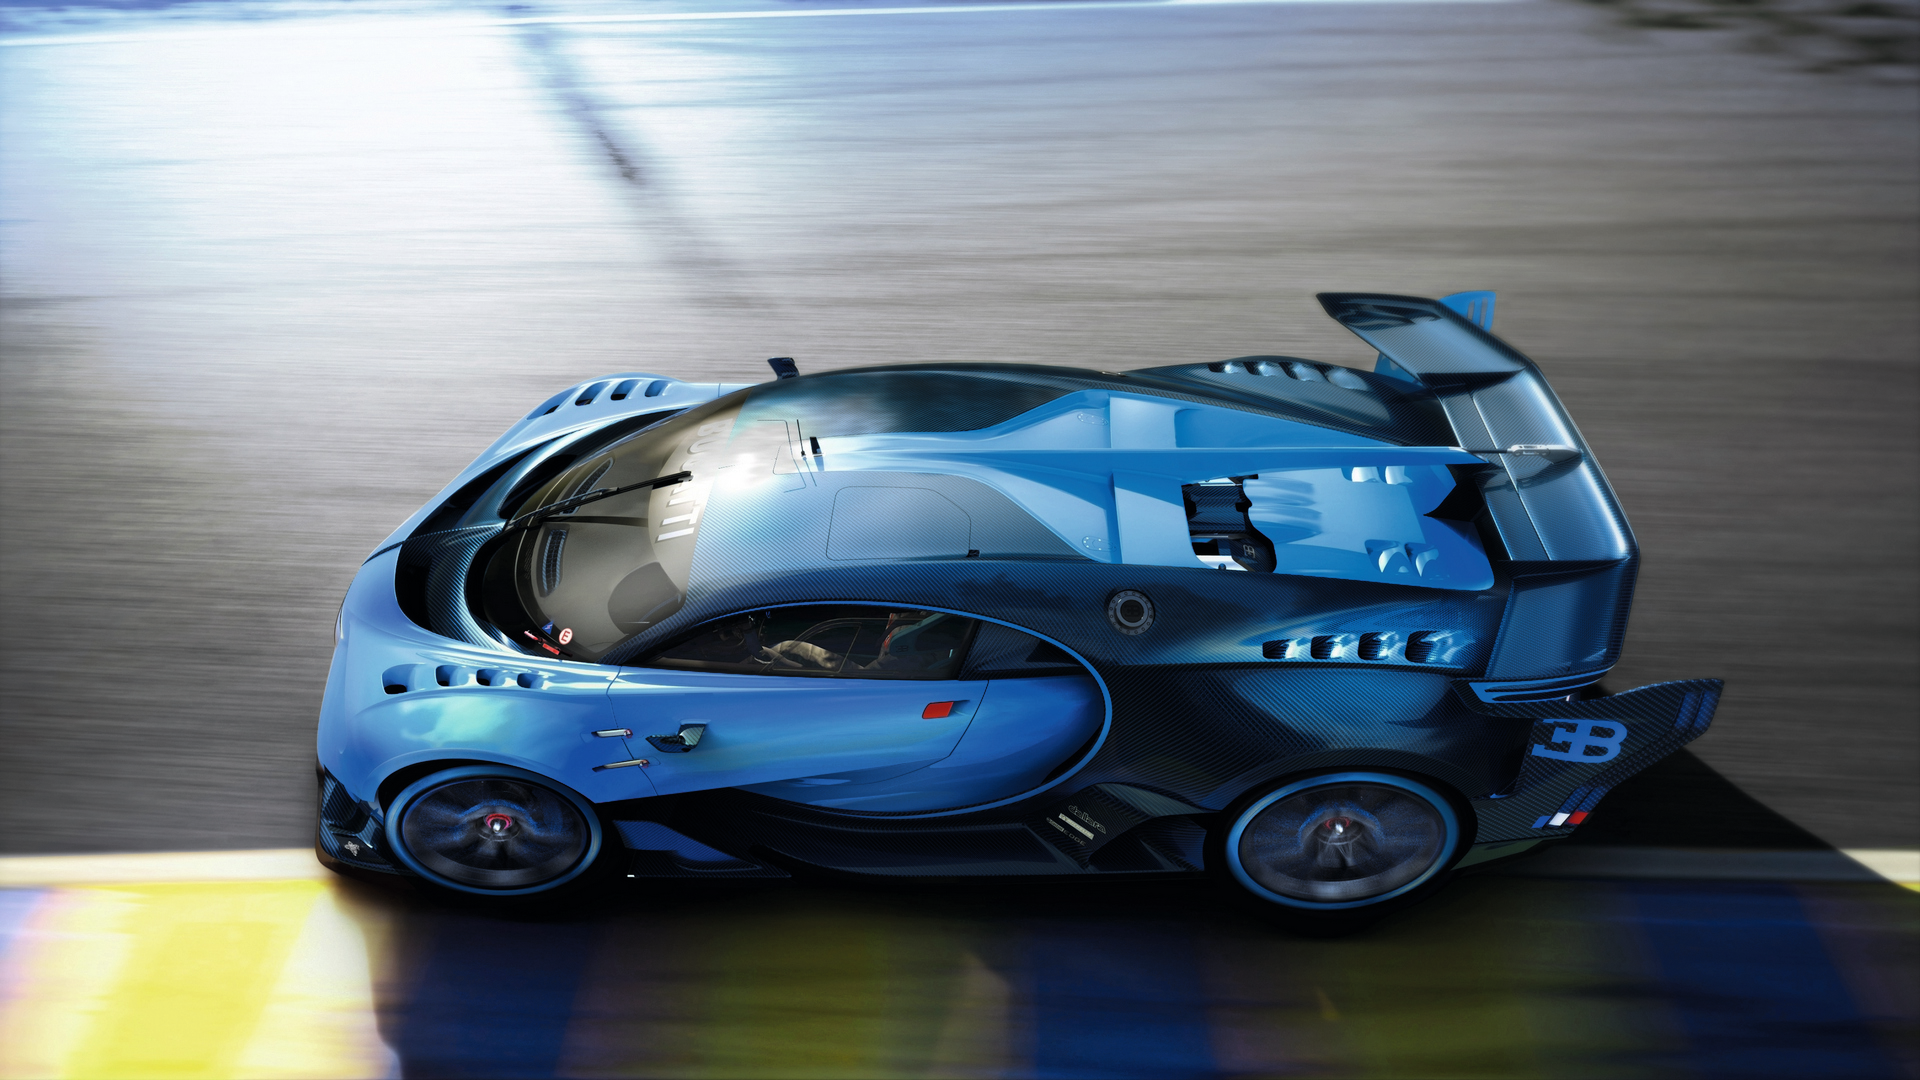 is the bugatti the fastest car